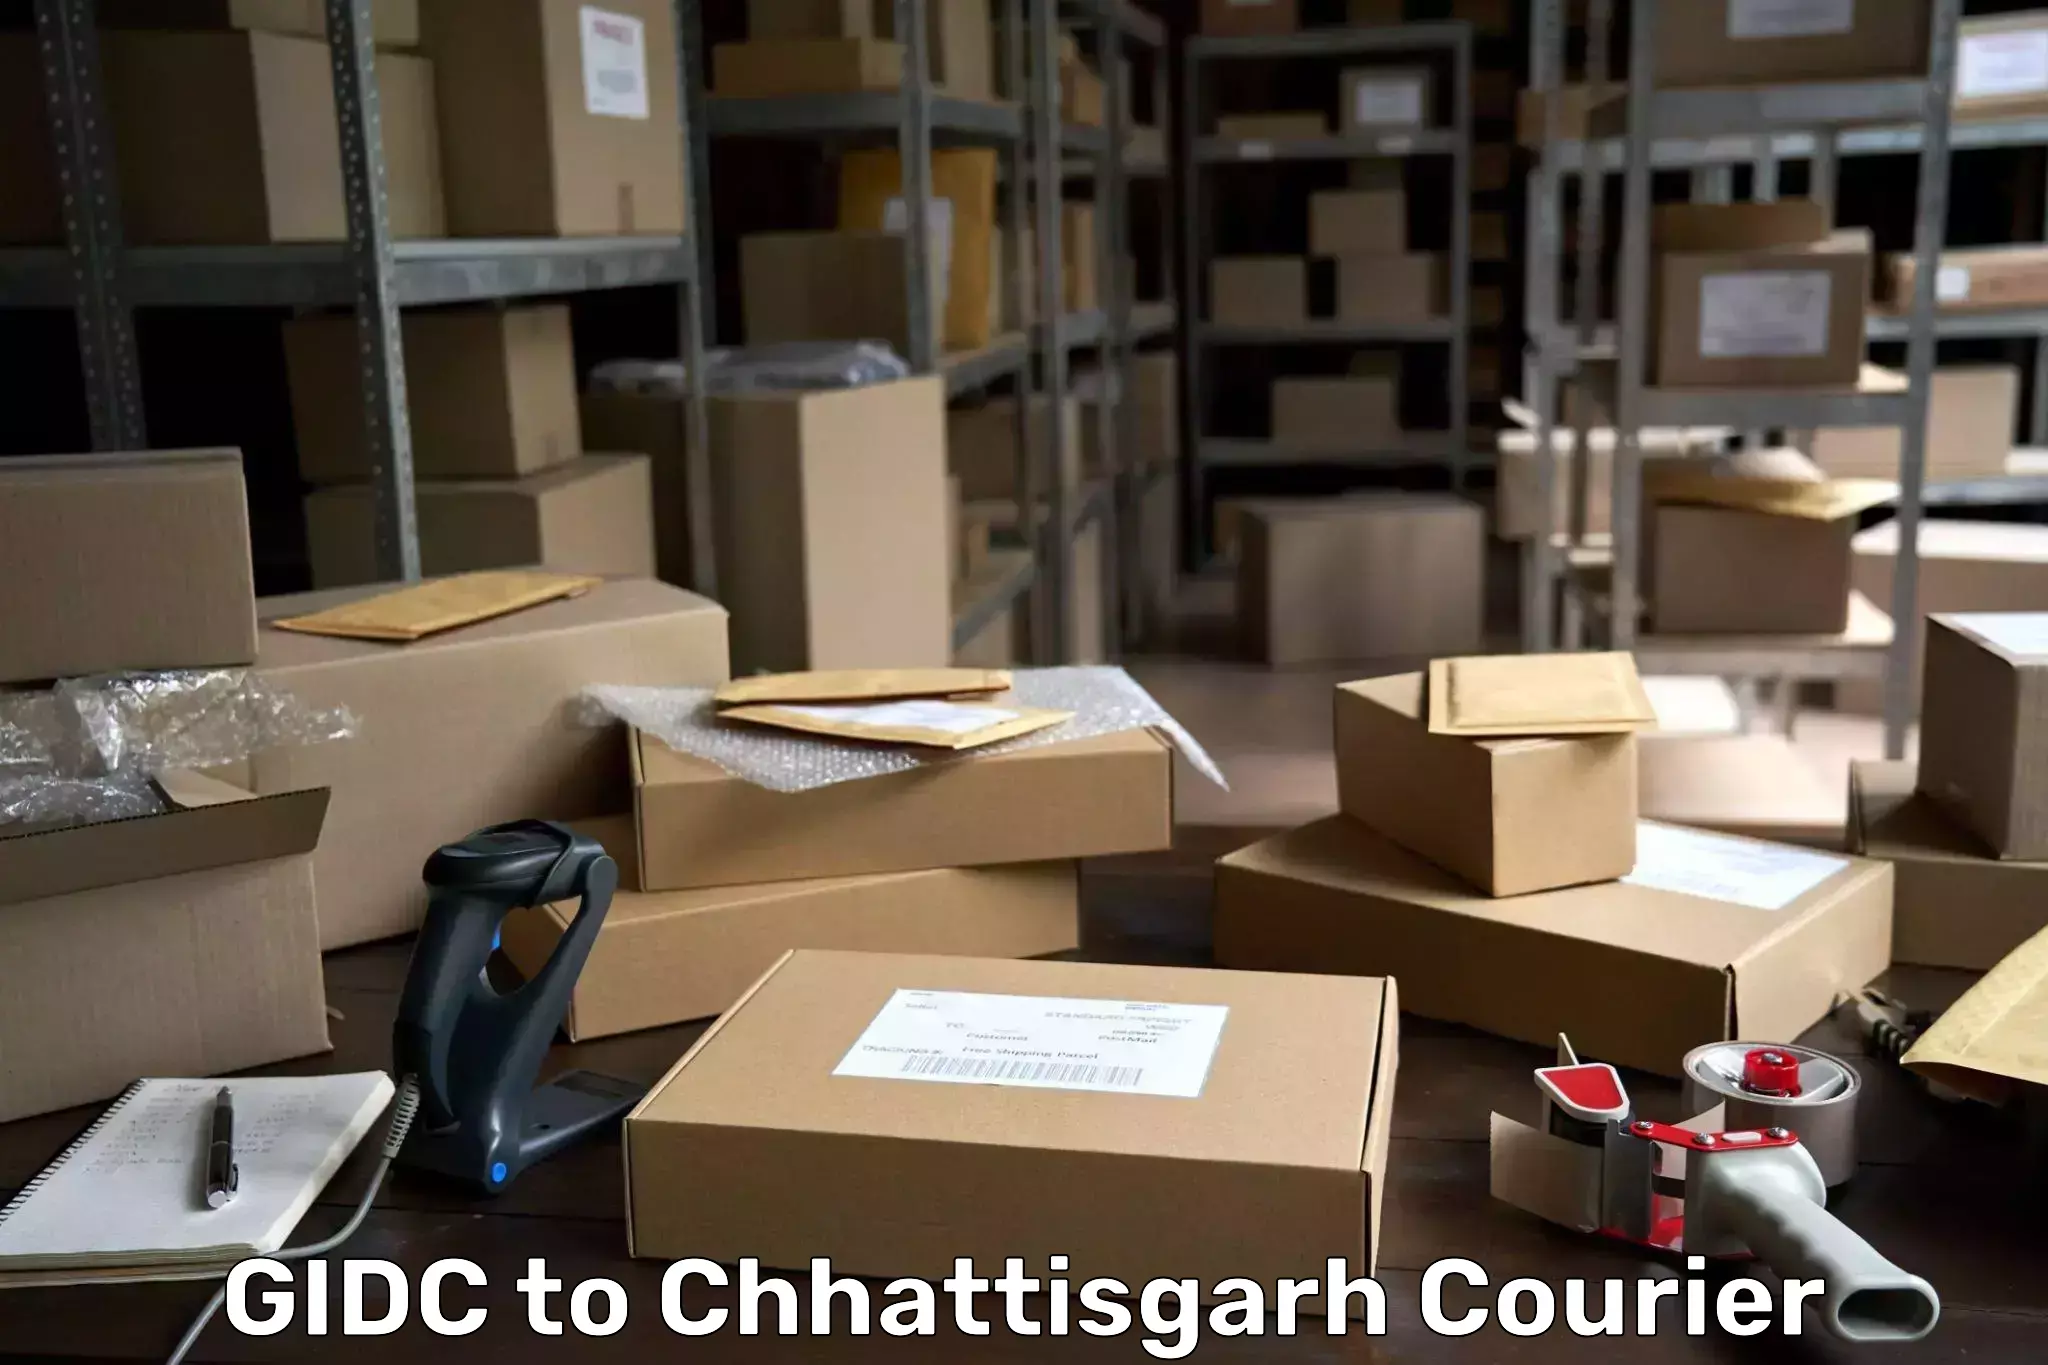 User-friendly delivery service GIDC to Bijapur Chhattisgarh